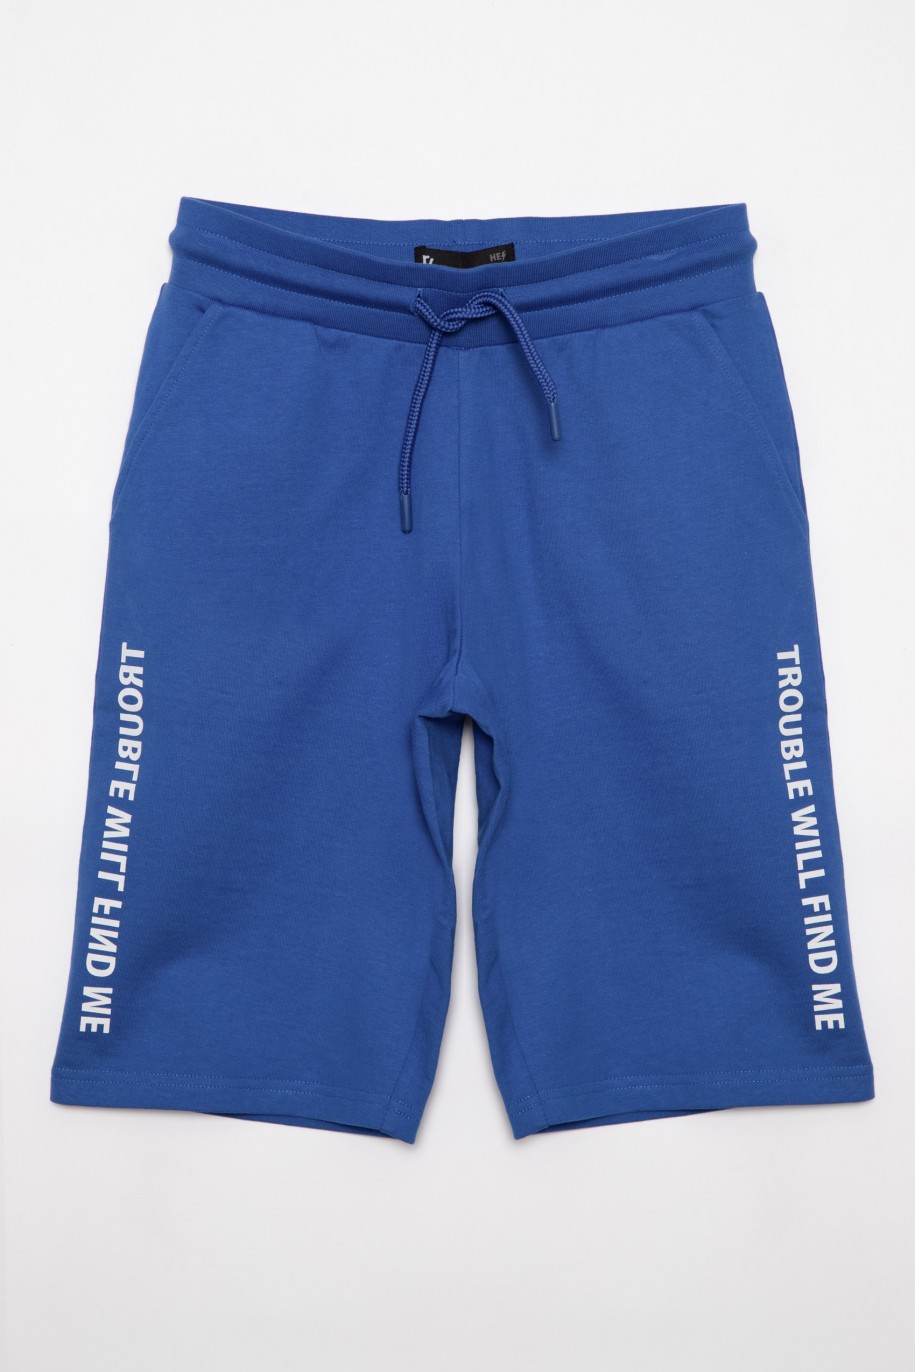 Niebieskie sportowe szorty dla chłopaka z nadrukami na nogawkach - 27068